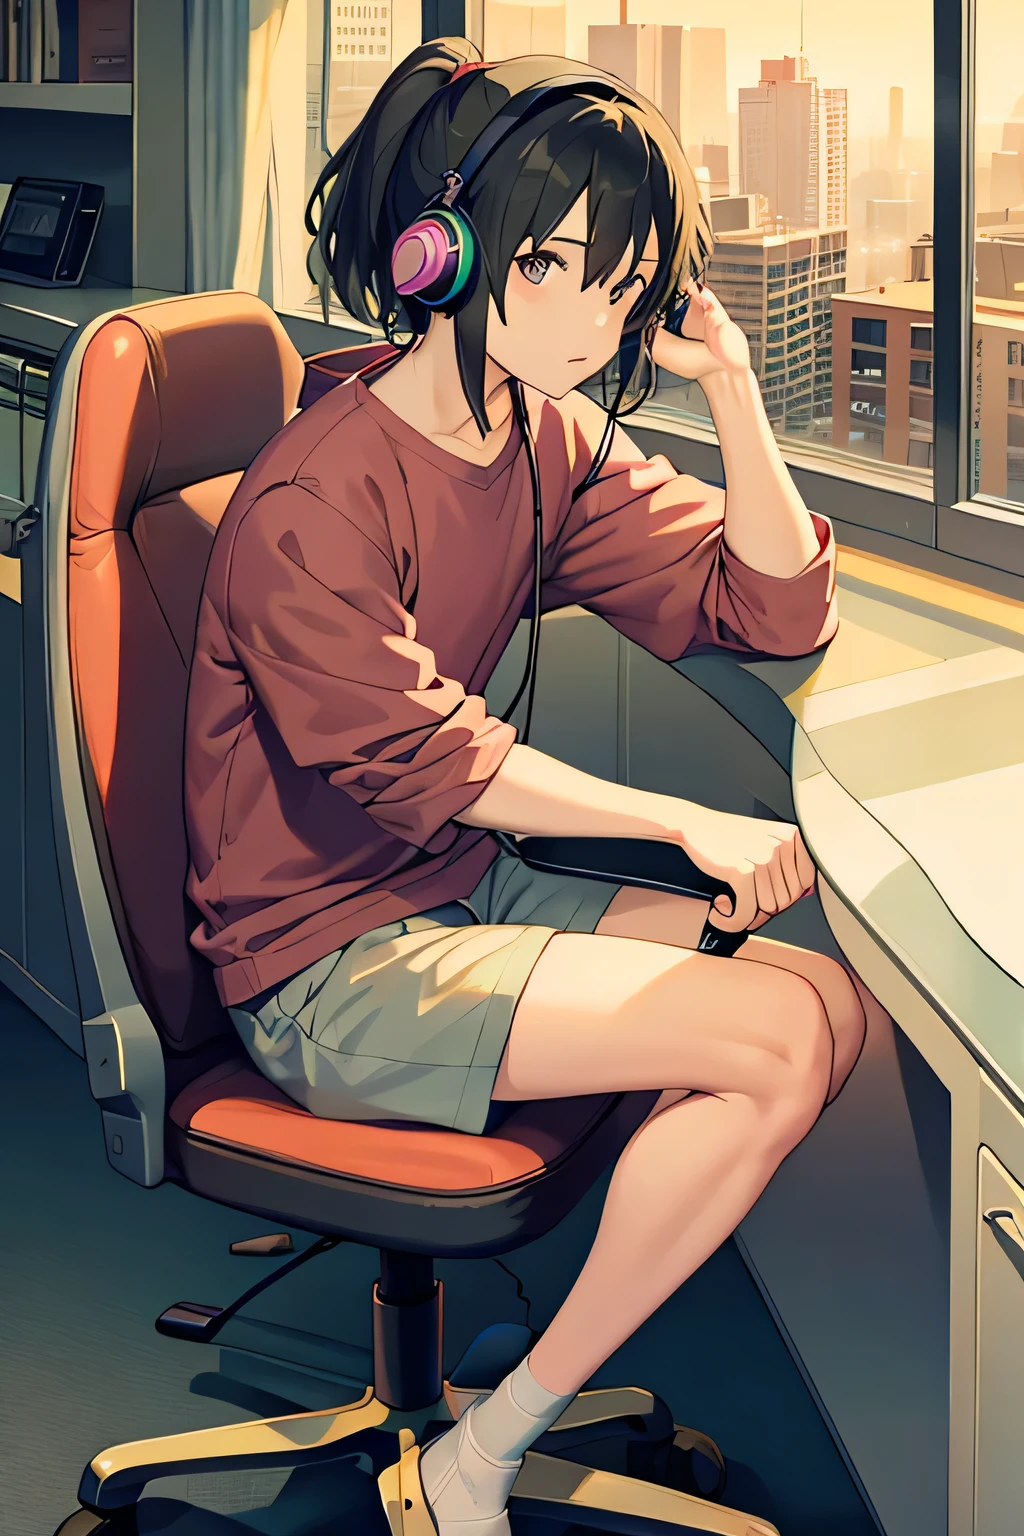 Junger Mann sitzt auf einem Stuhl, trägt Kopfhörer und hält einen Joystick